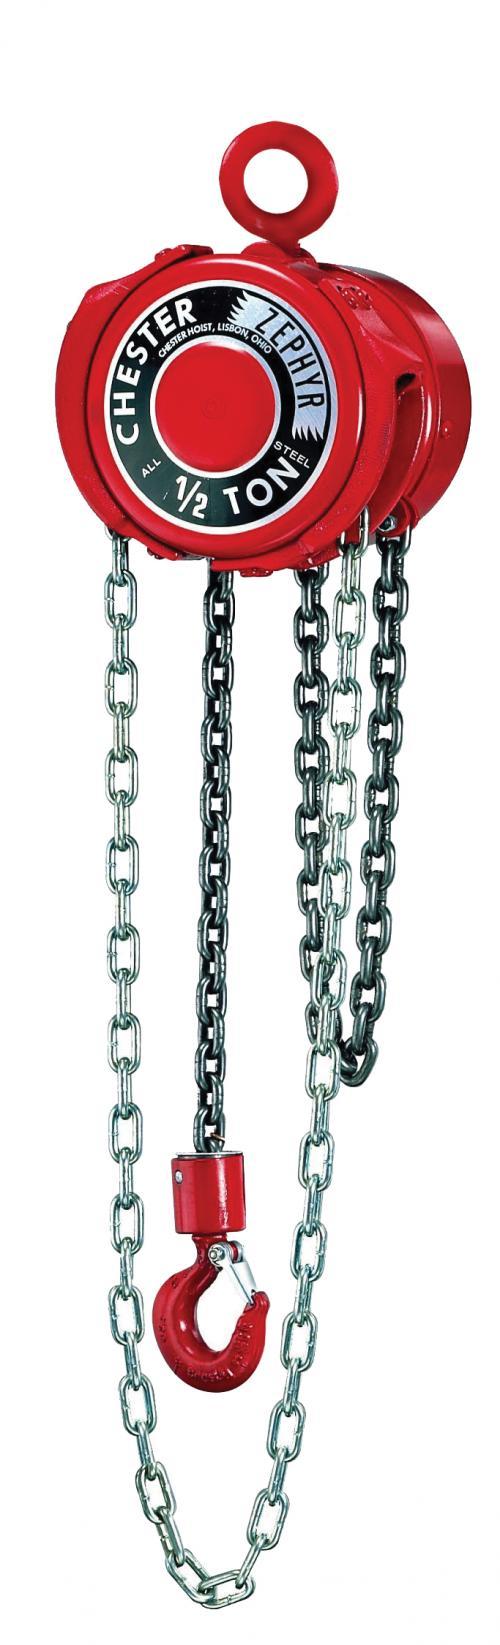 1/2 Ton Chester Zephyr | Manual Chain Hoist | Uescocranes.com